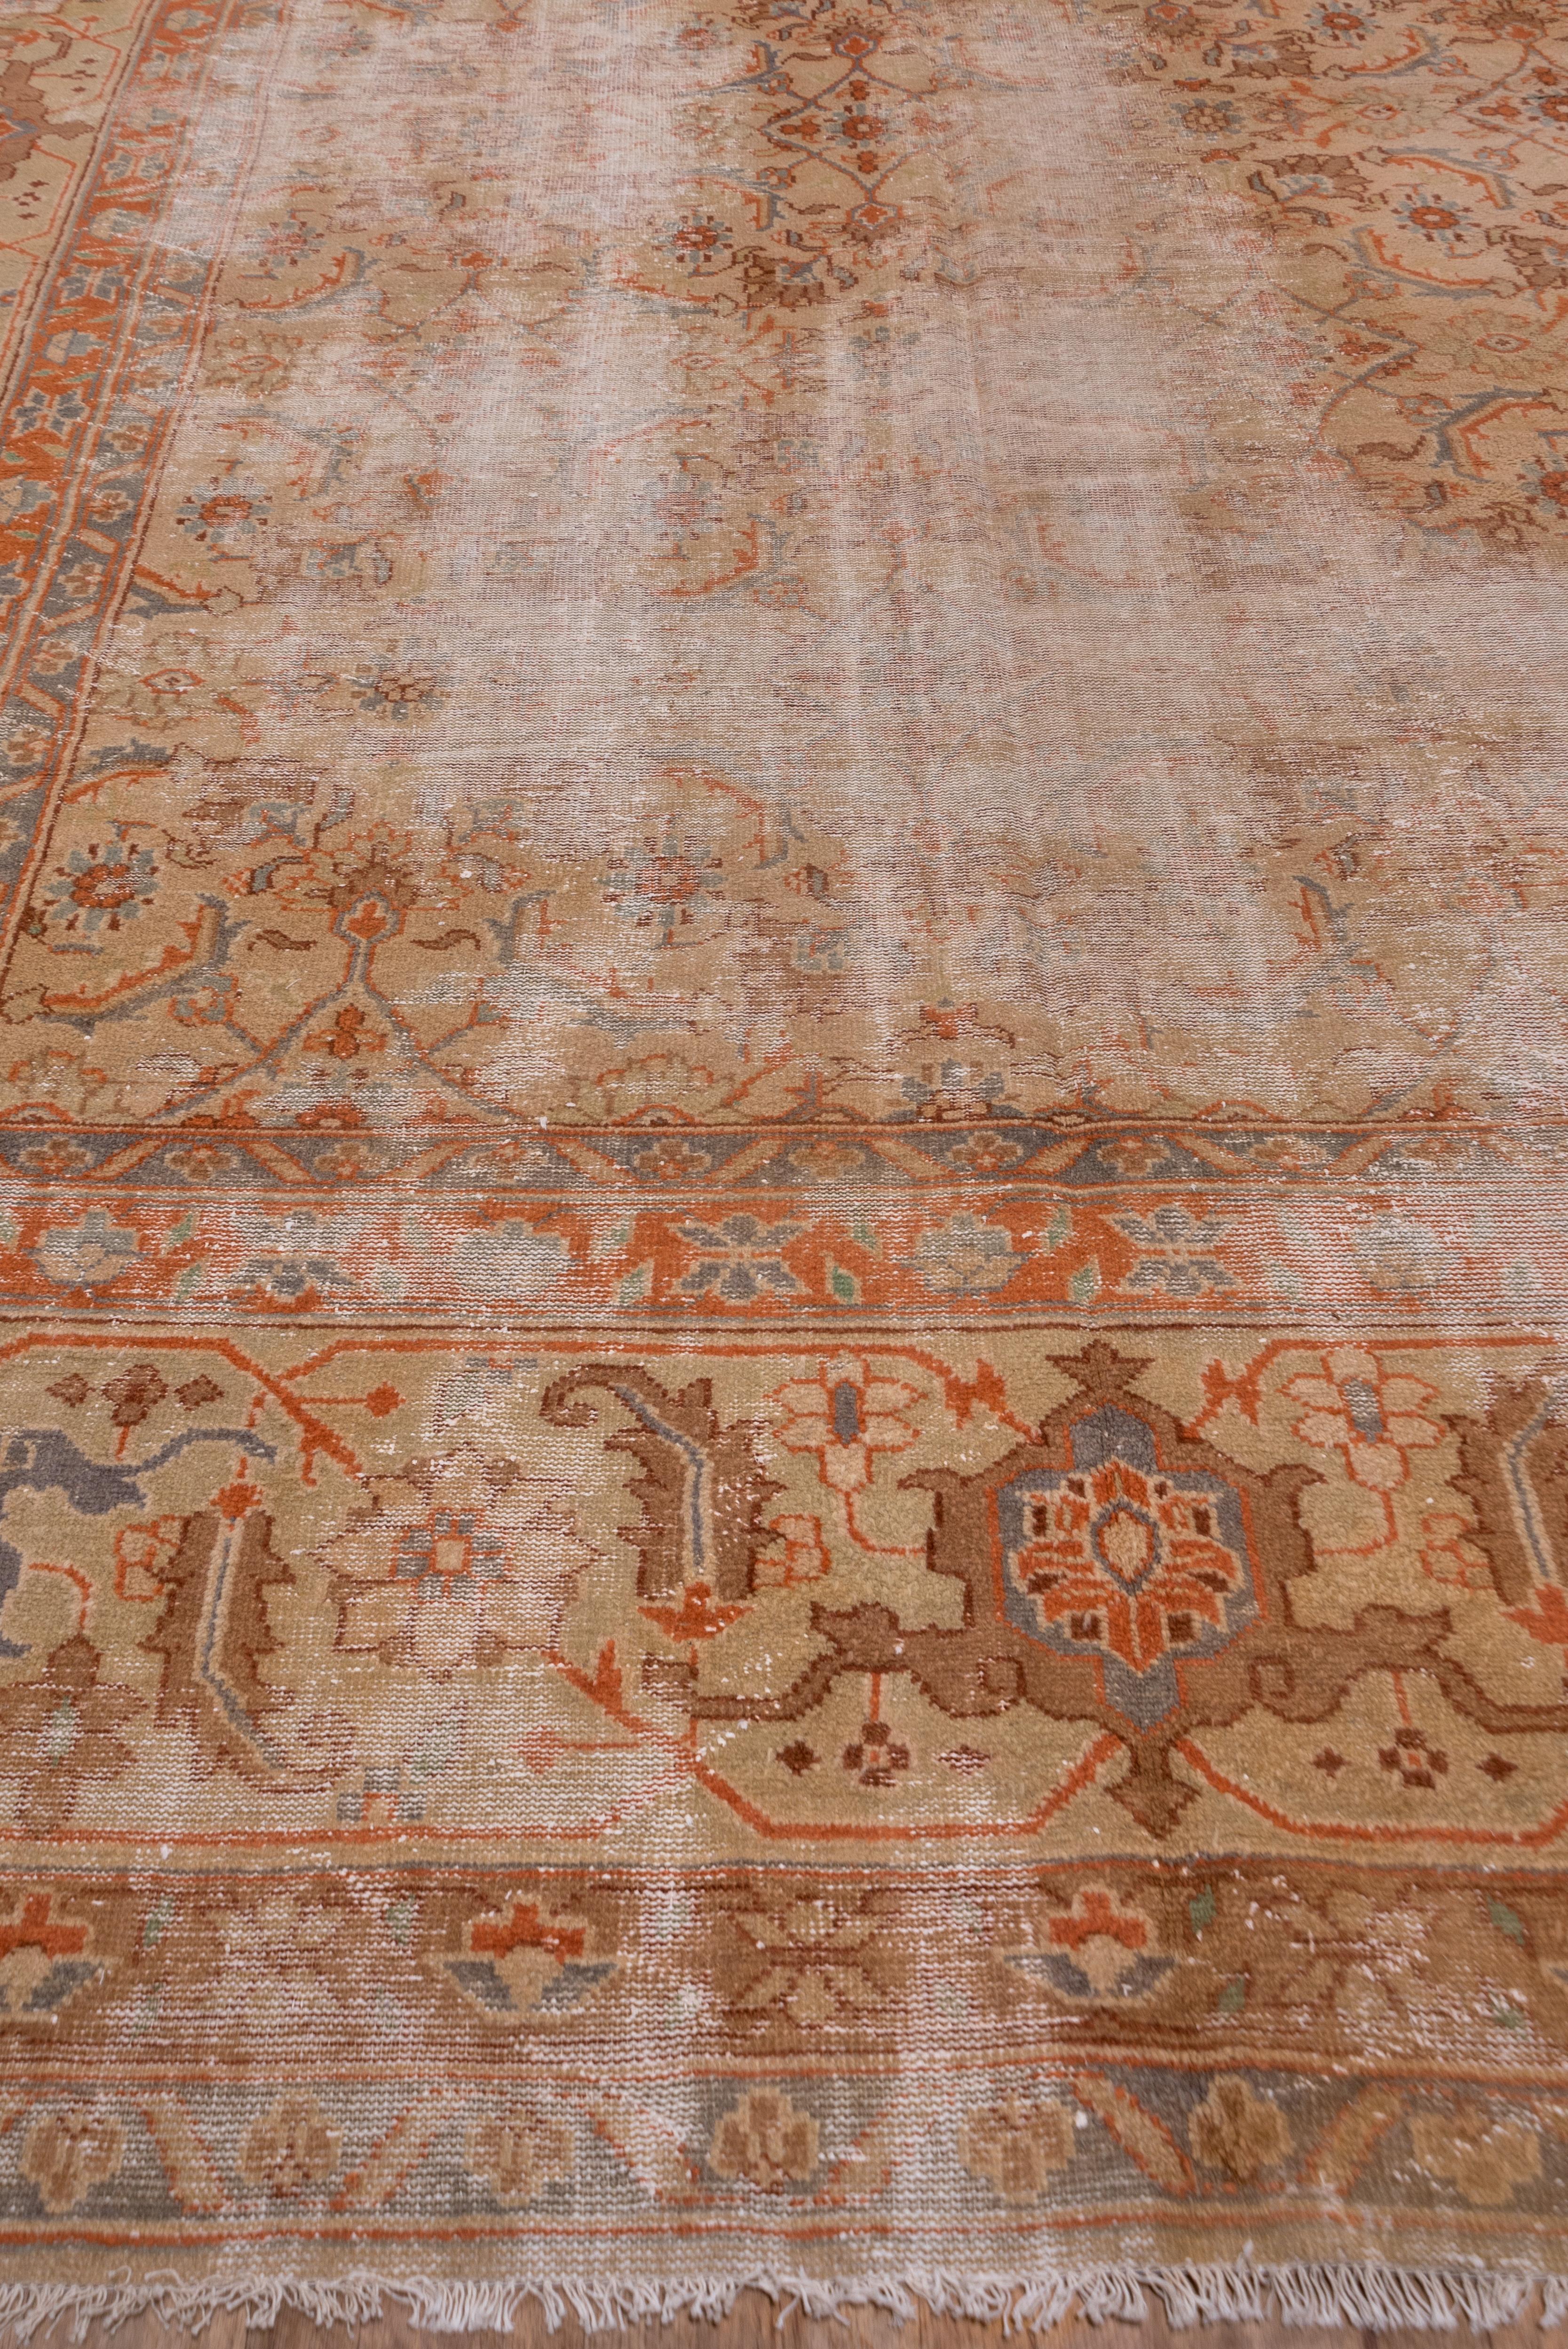 Dieser nordindische Teppich zeigt die Reste eines großformatigen Herati-Musters auf beigefarbenem Grund in einer Strohbordüre aus kühn gezeichneten, einfachen Schildkrötenpalmetten. Die Wolle ist trocken und die Bindung sehr grob. Das Muster ist auf